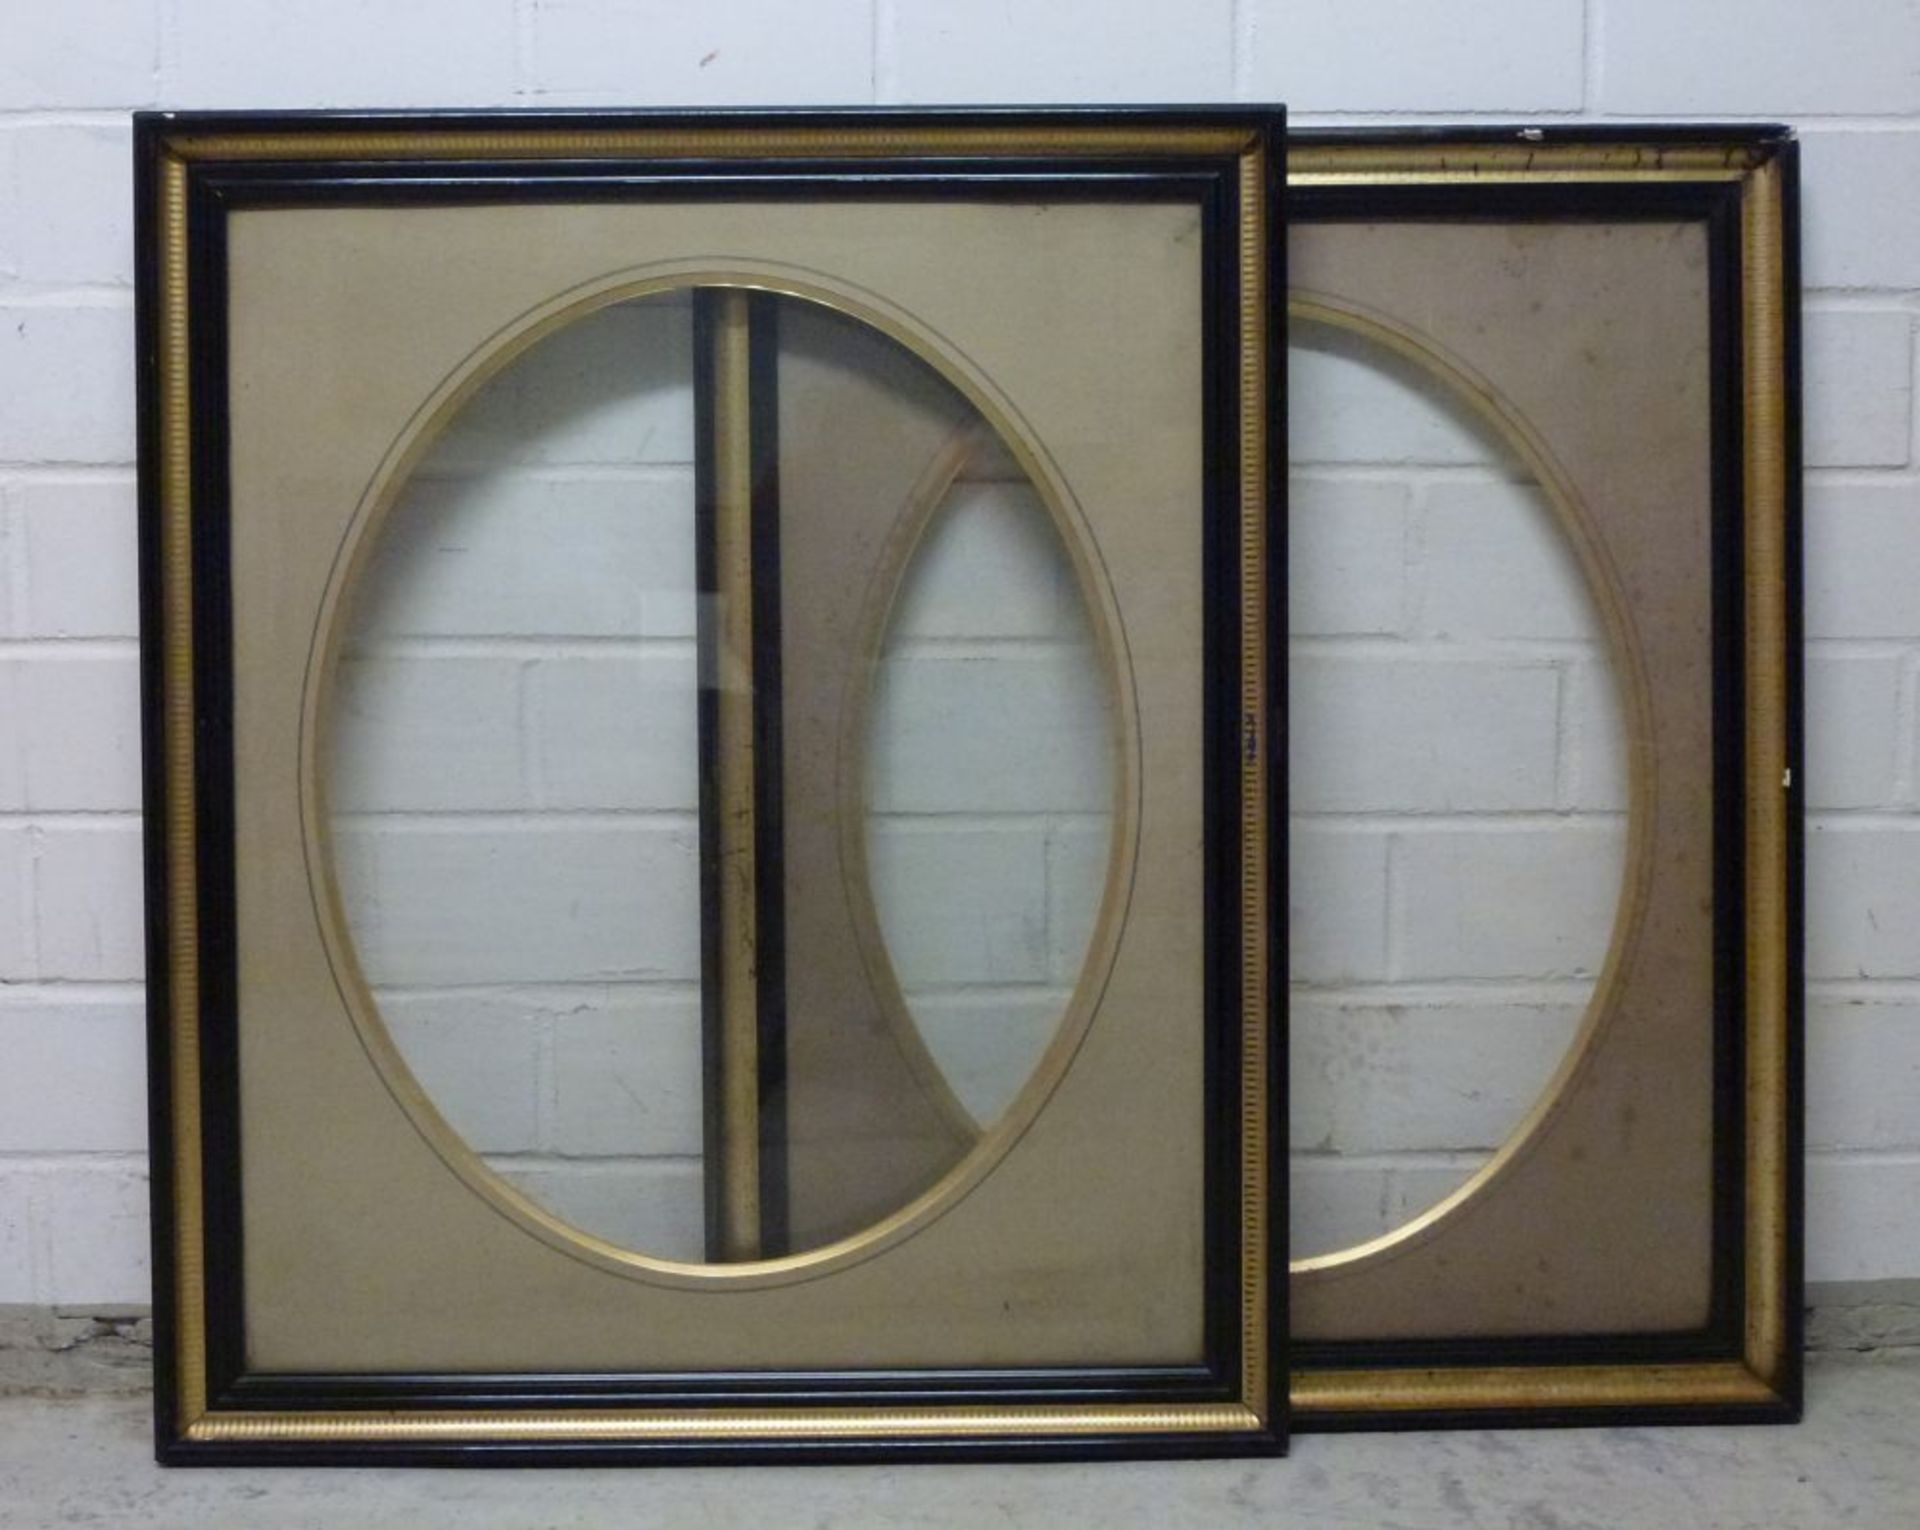 Paar Rahmen, um 1900Holz, vergoldete Hohlkehle in schwarzen Profilleisten, altes Glas, Passepartout: